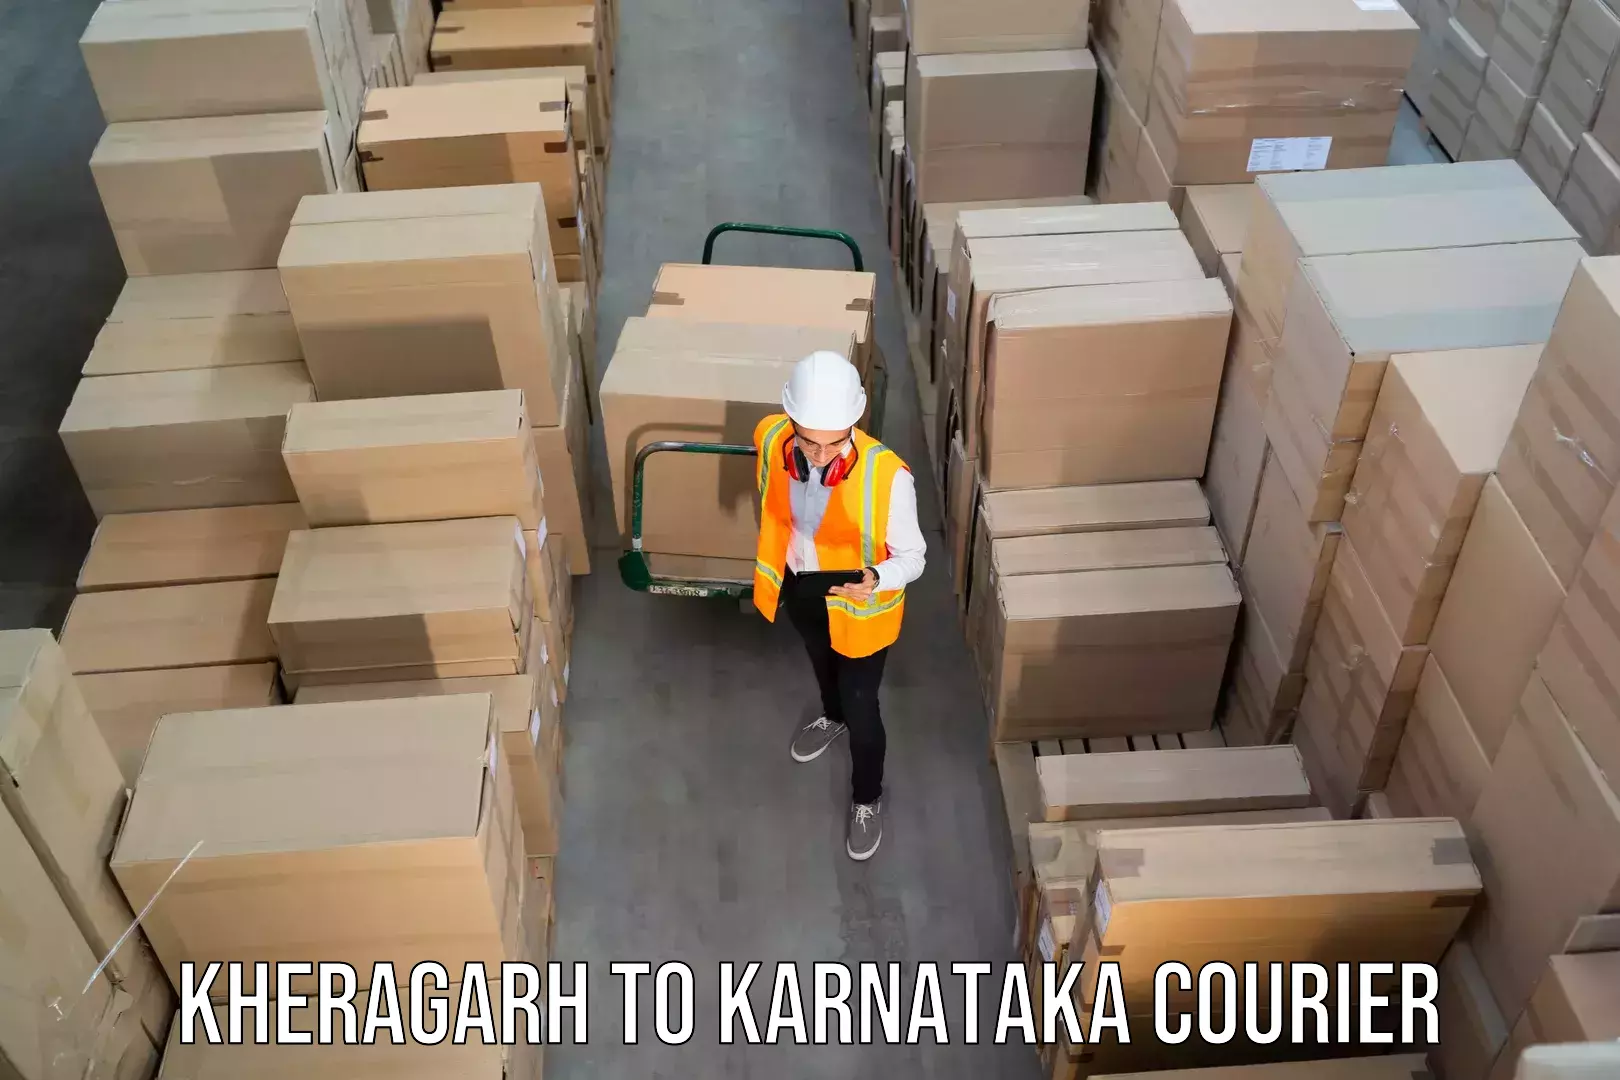 Efficient cargo handling Kheragarh to Bailhongal